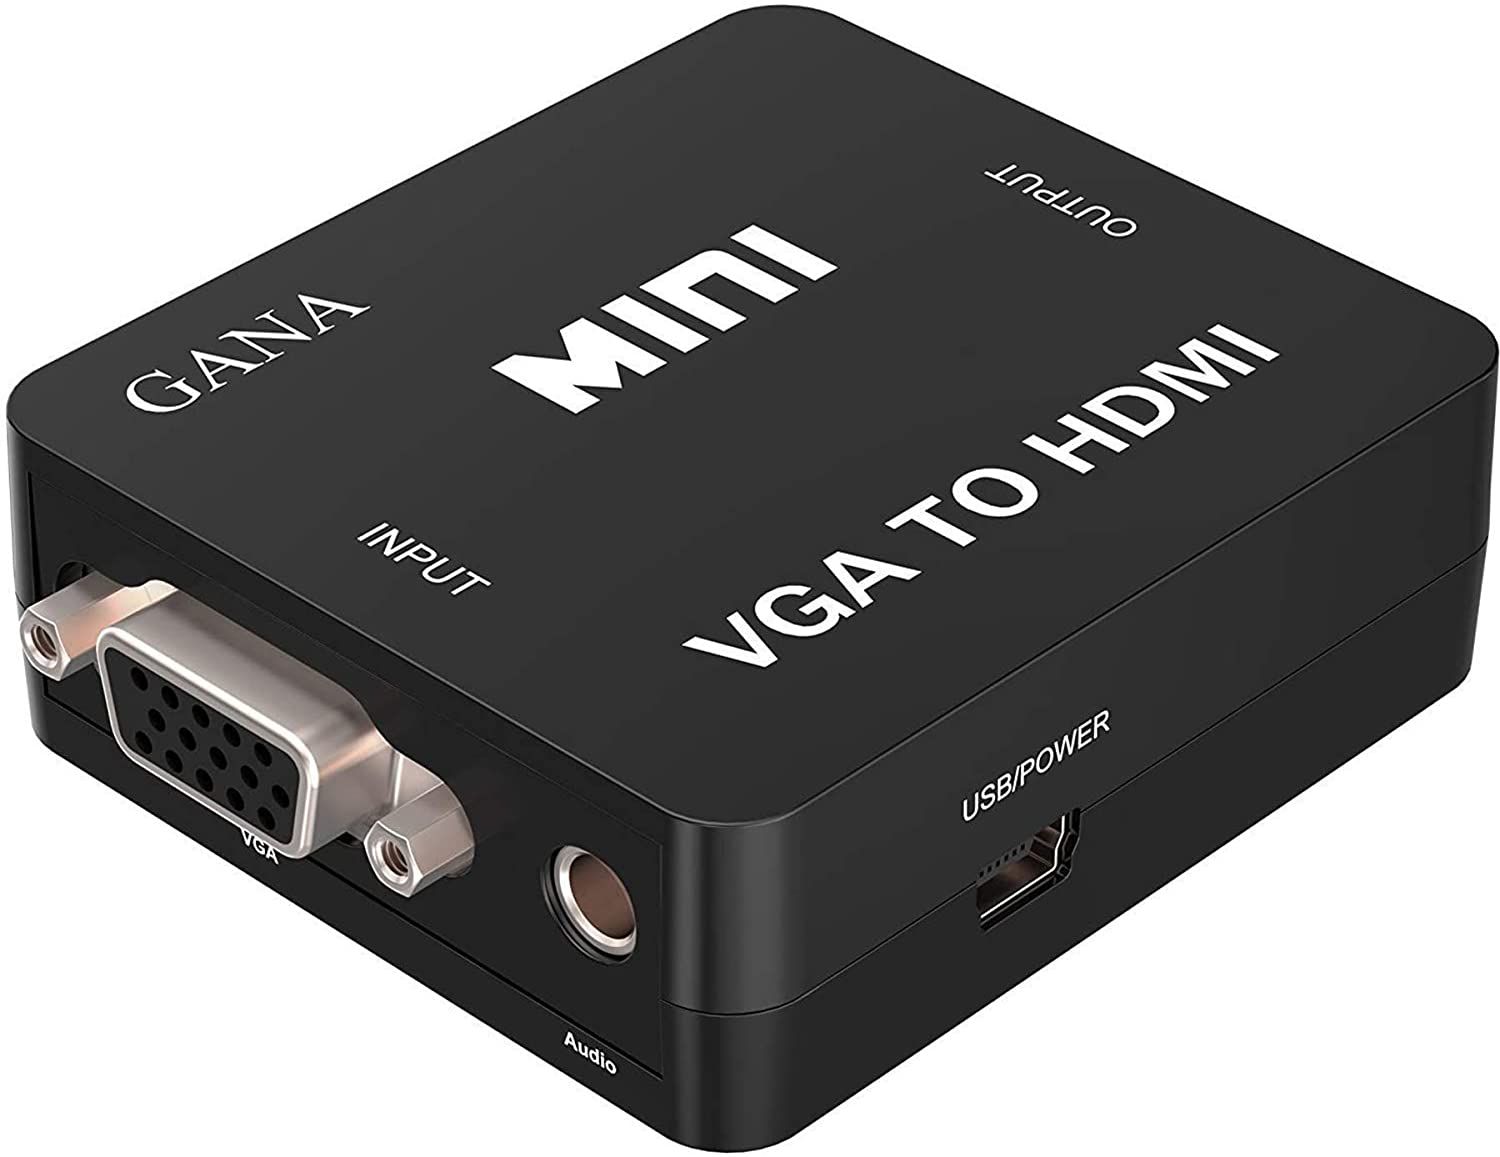 GANA VGA to HDMI Adapter